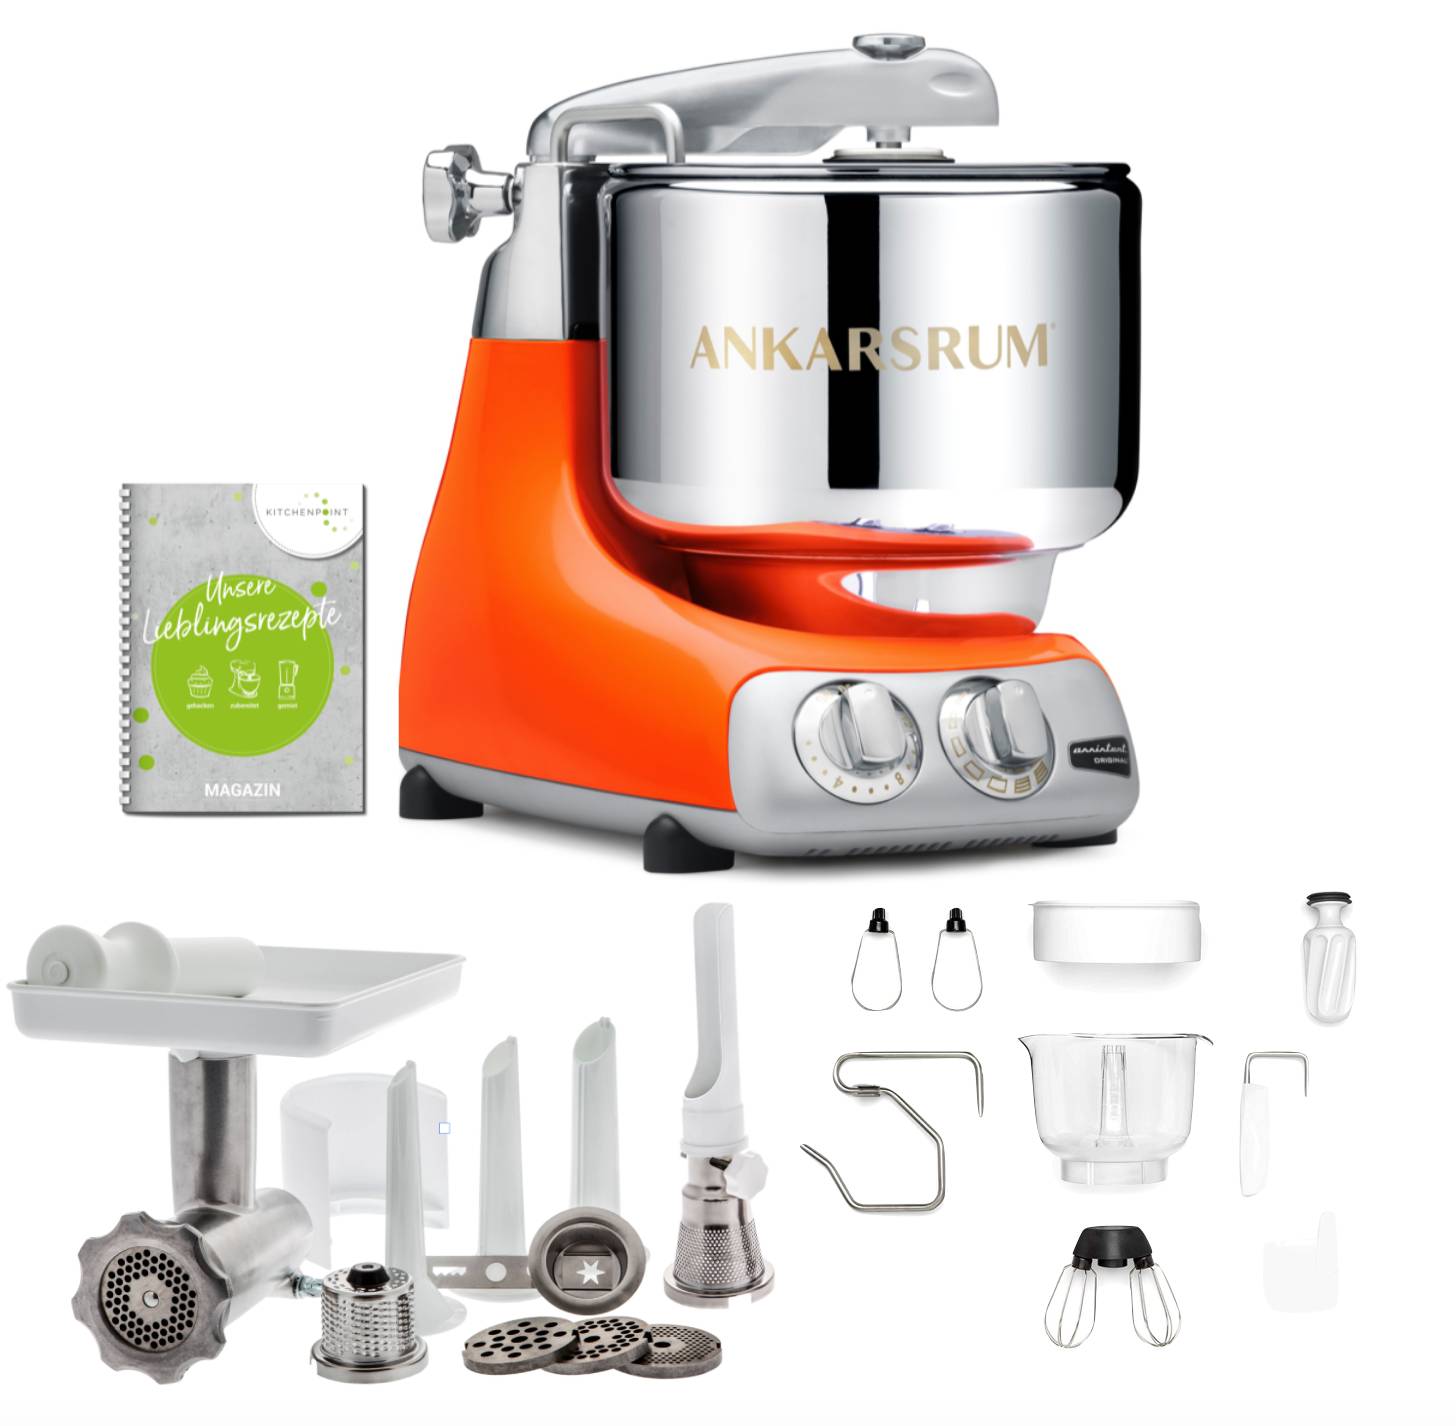 Ankarsrum Küchenmaschine Assistent Pure Orange - Komplett Set 